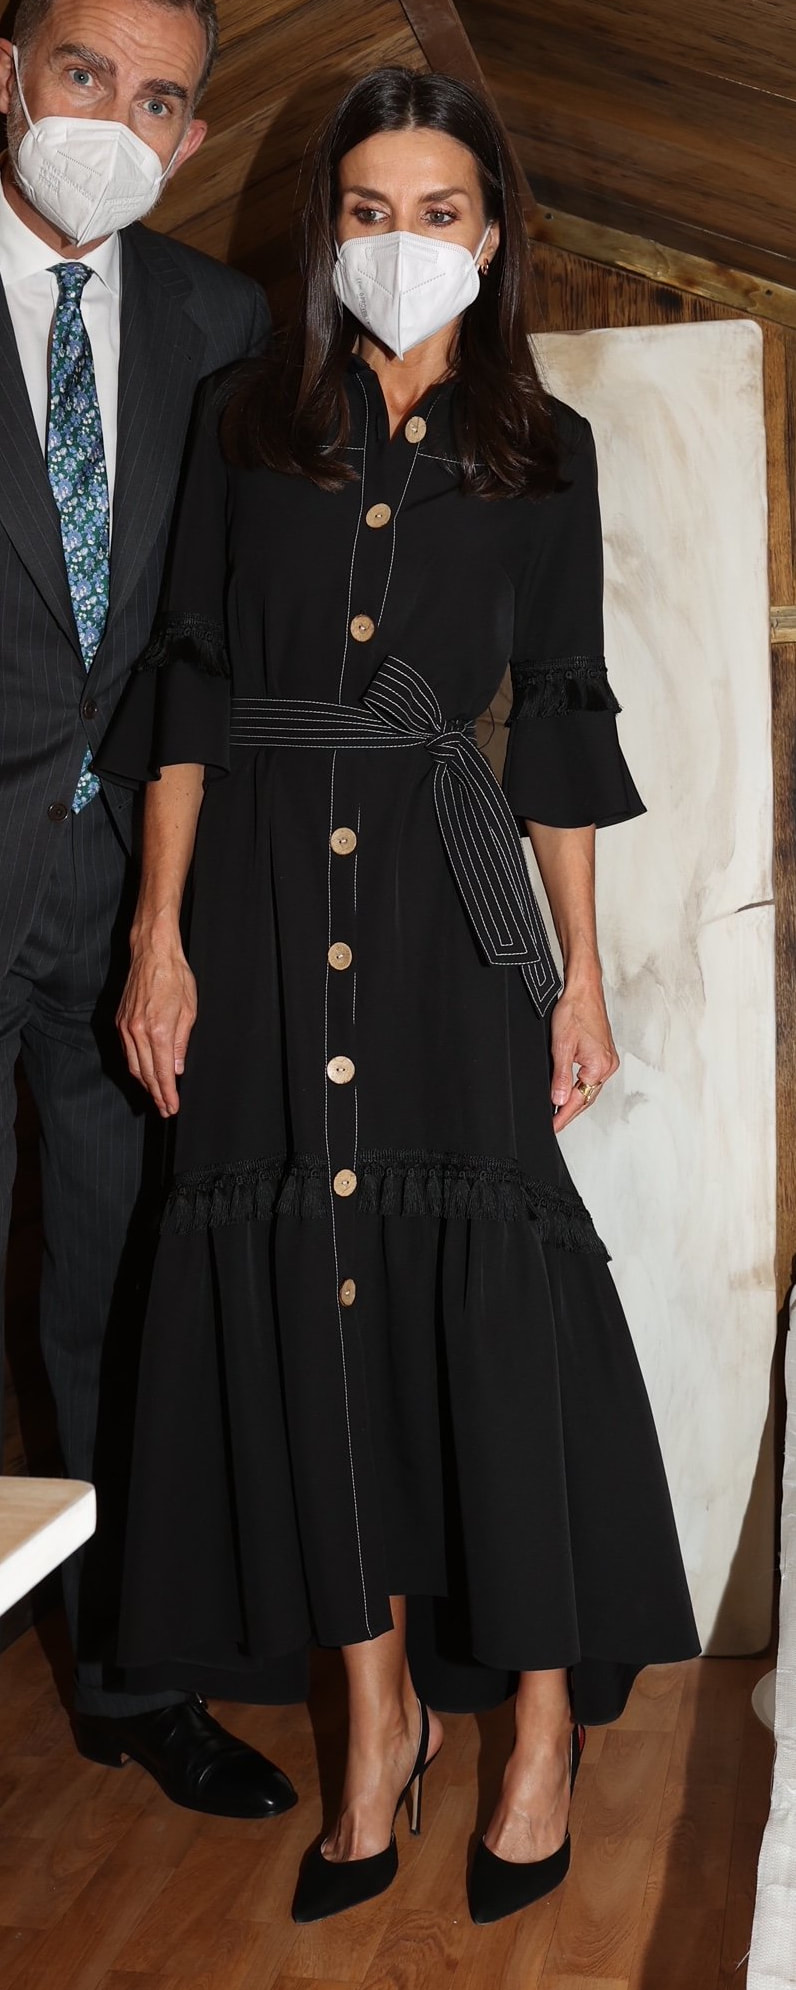 Leyre Doueil 'Drago' Dress​ as seen on Queen Letizia.